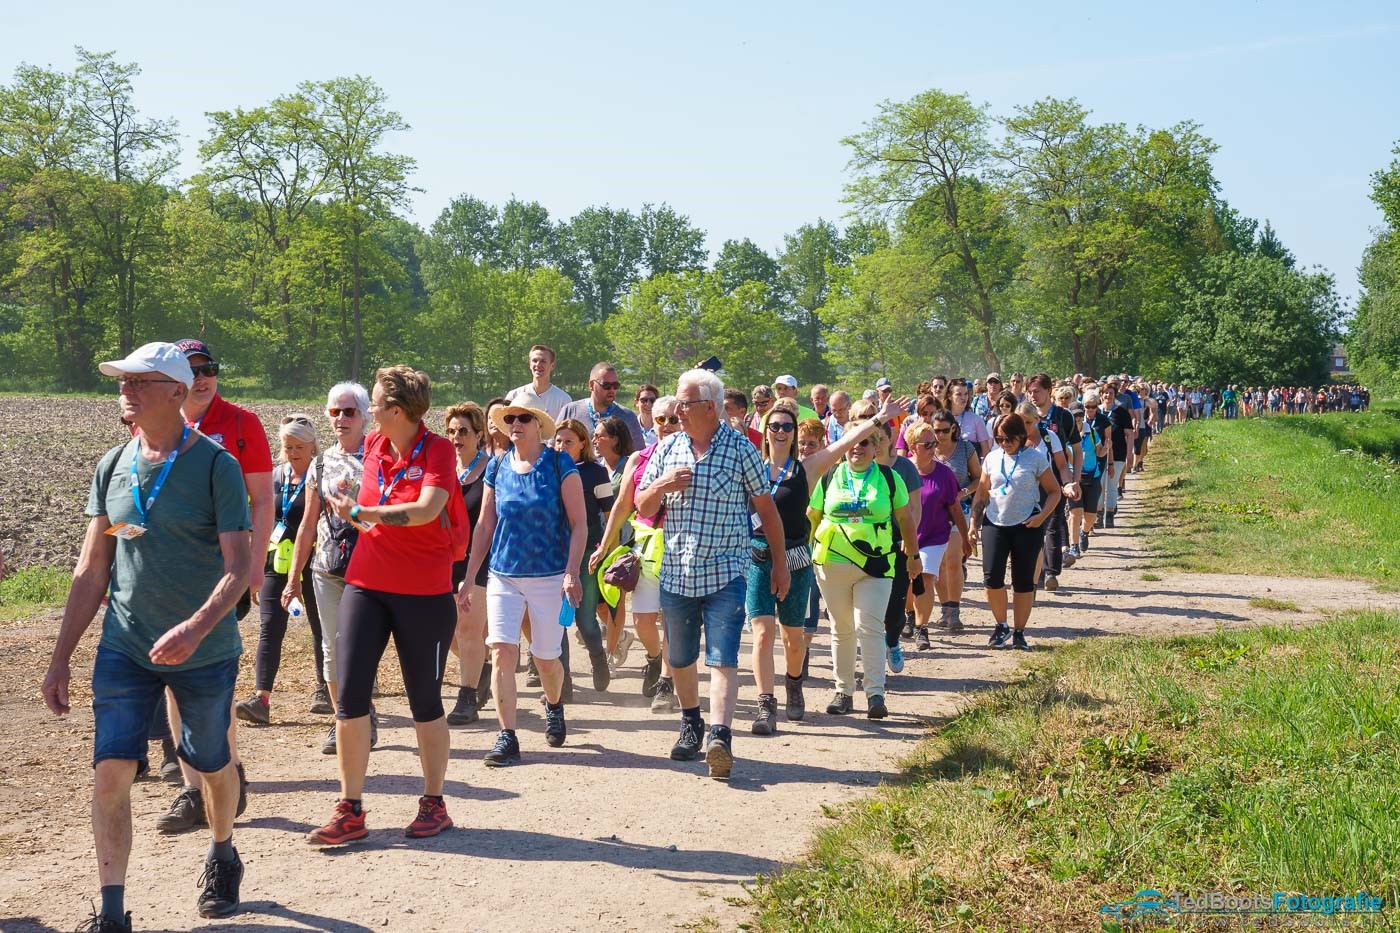 Honderden wandelaars lopen door groen landschap tijdens Venloop.